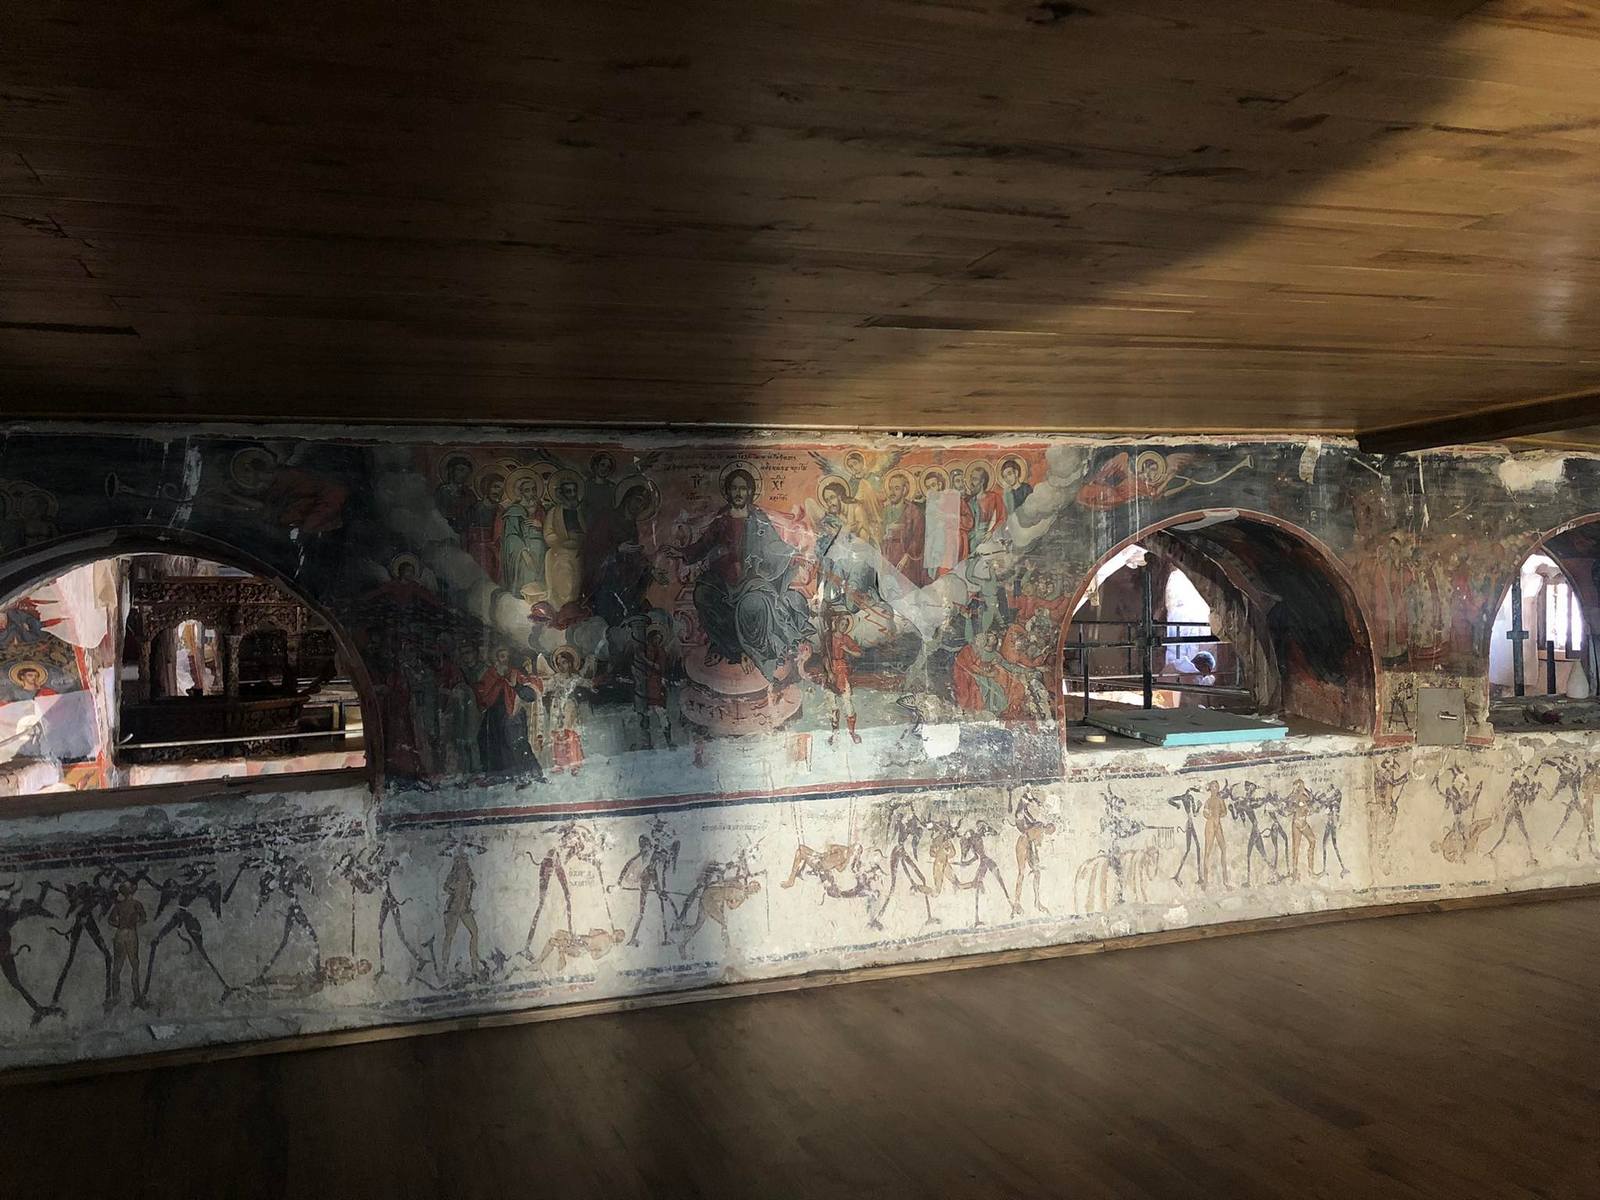 Το έργο «Αποκατάσταση & Αντισεισμική προστασία του Ι. Ναού Κοιμήσεως Θεοτόκου «Μεγάλη Παναγιά» στη Σαμαρίνα Γρεβενών επισκέφθηκε ο Αντιπεριφερειάρχης Γ. Βαβλιάρας